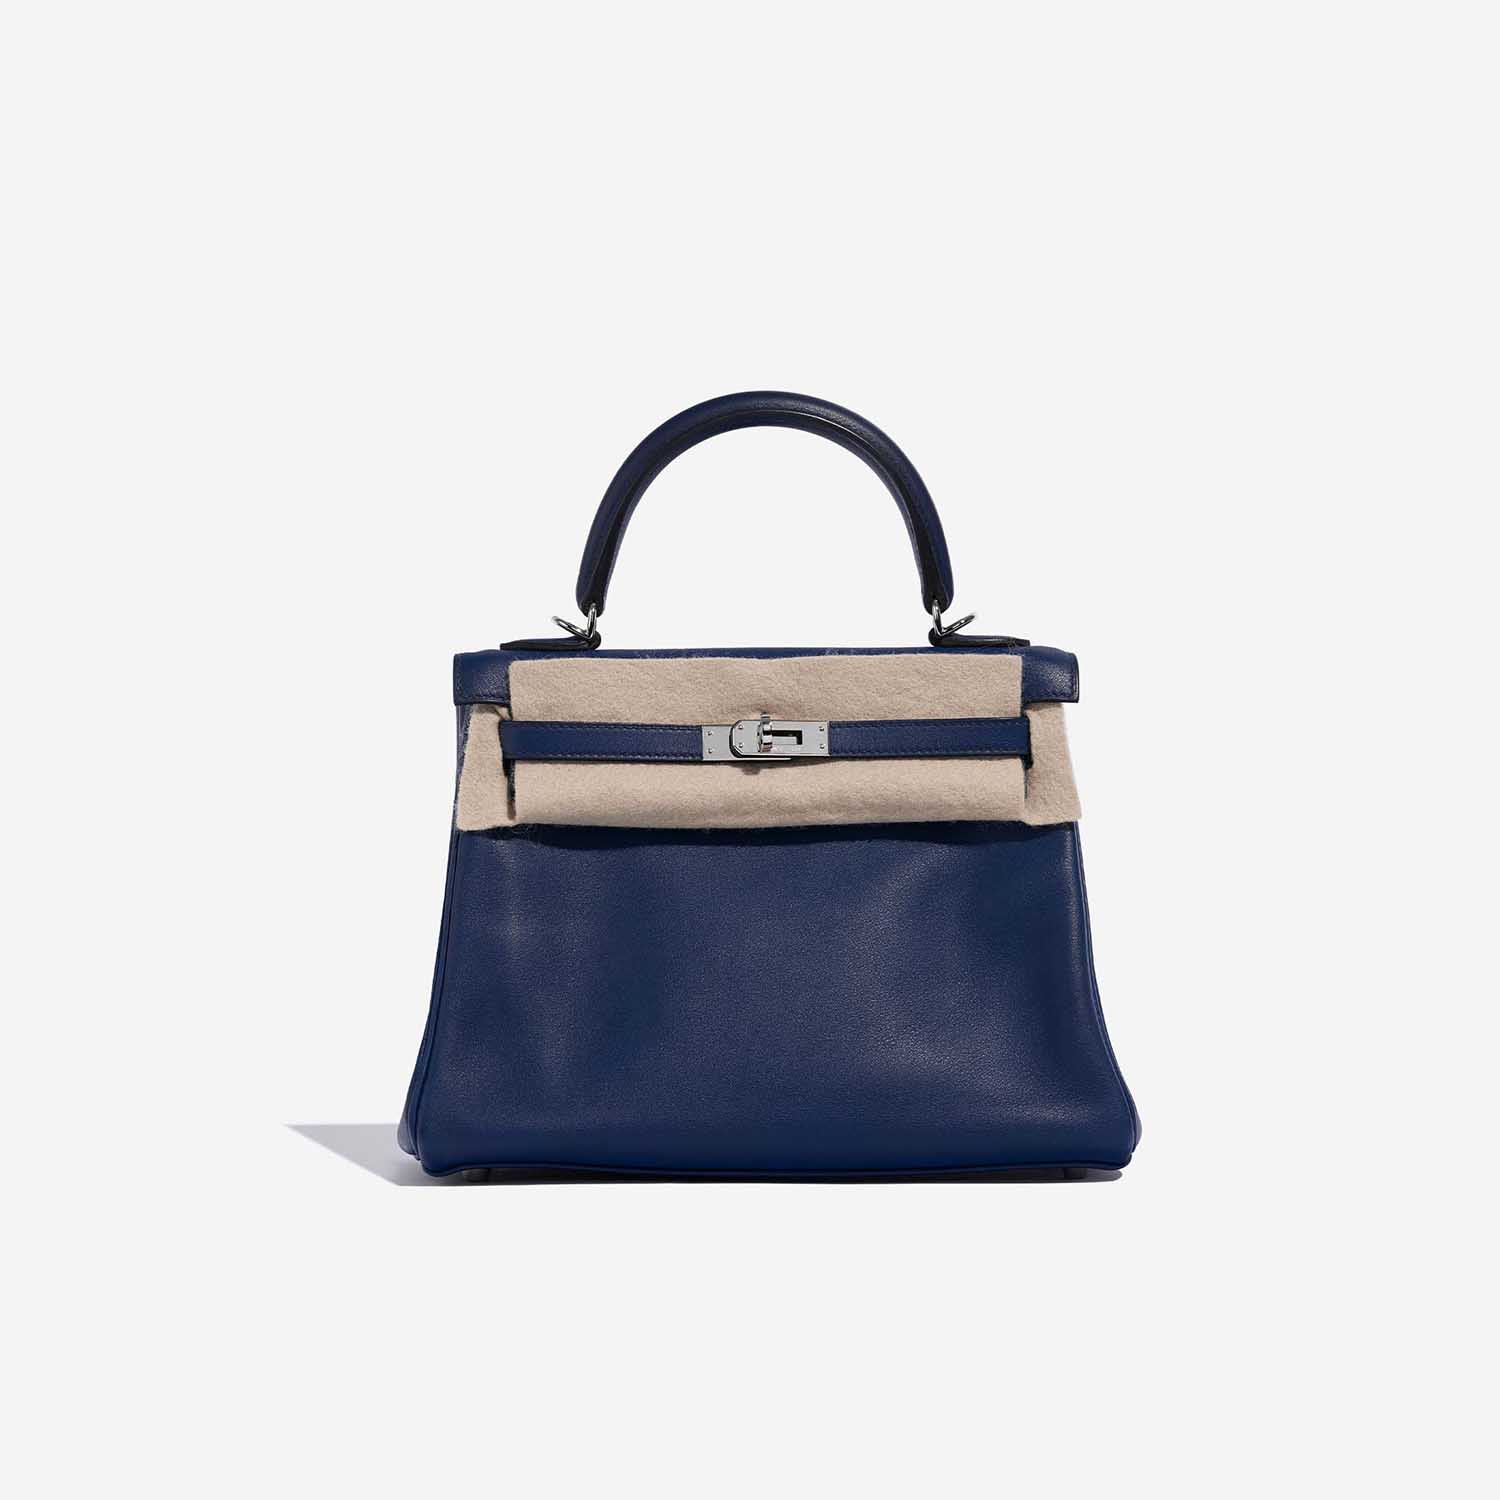 Sac Hermès d'occasion Kelly 25 Swift Bleu Saphir Bleu Front Velt | Vendez votre sac de créateur sur Saclab.com